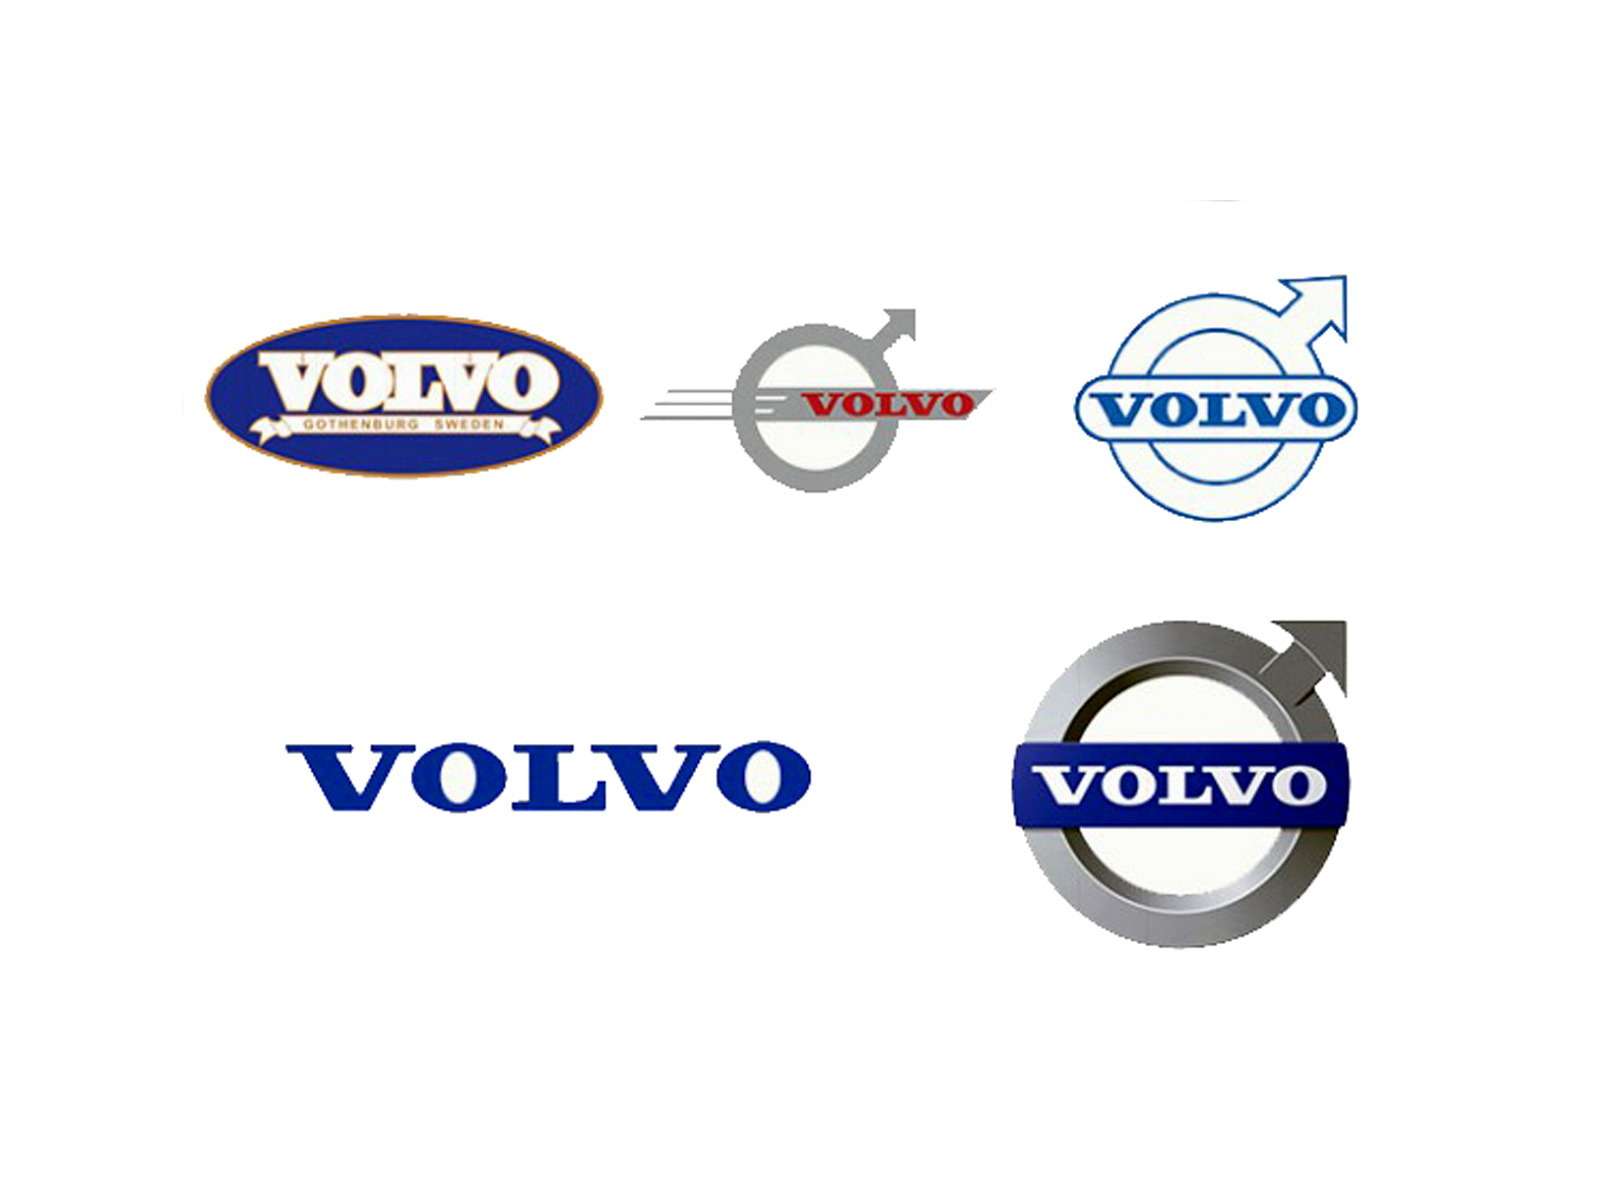 VOLVO. Идея логотипа Volvo родилась вместе с первым автомобилем в 1927 году. Обводы с выпирающей стрелой придали ему сразу ряд смыслов. По одной версии, она символизировала римского бога Марса. По другой – железо (шведская сталь отличалась высоким качеством). По третьей – мужское начало. По четвертой – все сразу. Диагональная полоска, проходящая через решетку радиатора и ставшая визиткой марки, изначально служила точкой крепления эмблемы. Шрифт на логотипах Volvo остается неизменным с 1958 года.